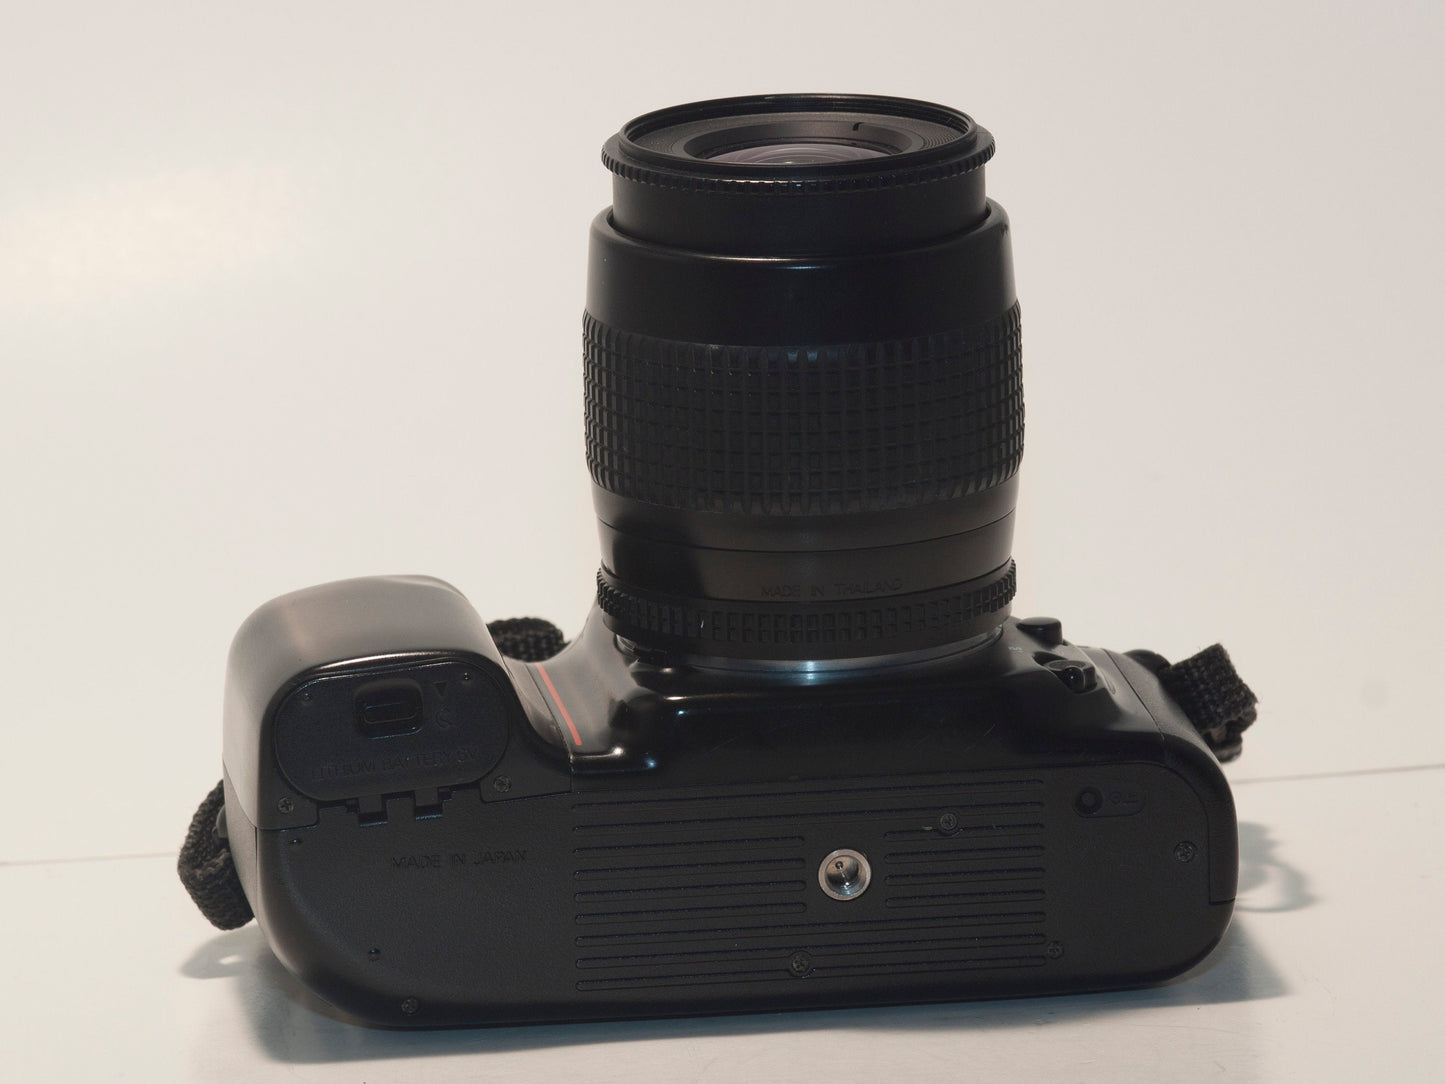 Reflex Nikon F50 35 mm